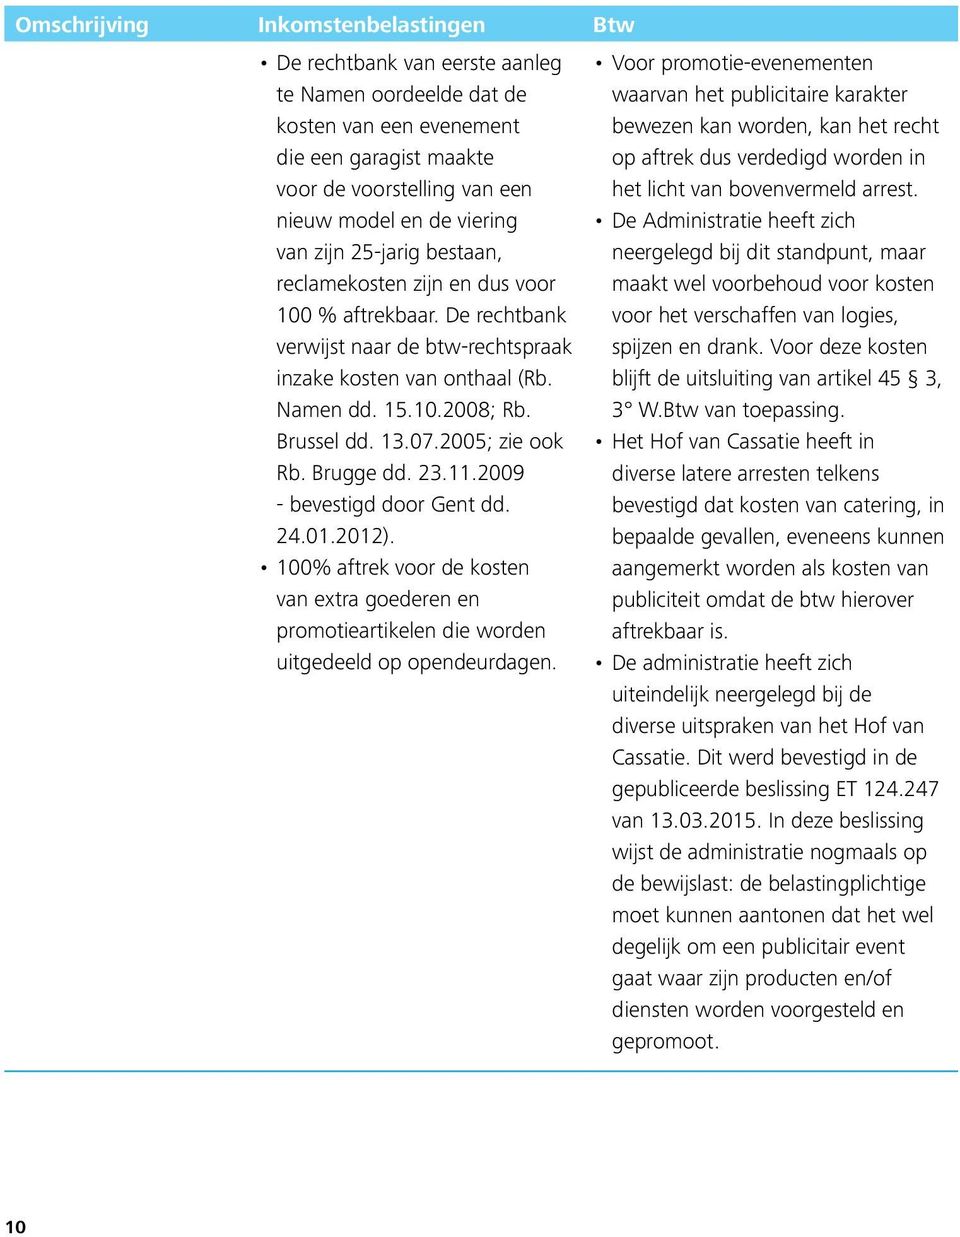 2005; zie ook Rb. Brugge dd. 23.11.2009 - bevestigd door Gent dd. 24.01.2012). 100% aftrek voor de kosten van extra goederen en promotieartikelen die worden uitgedeeld op opendeurdagen.